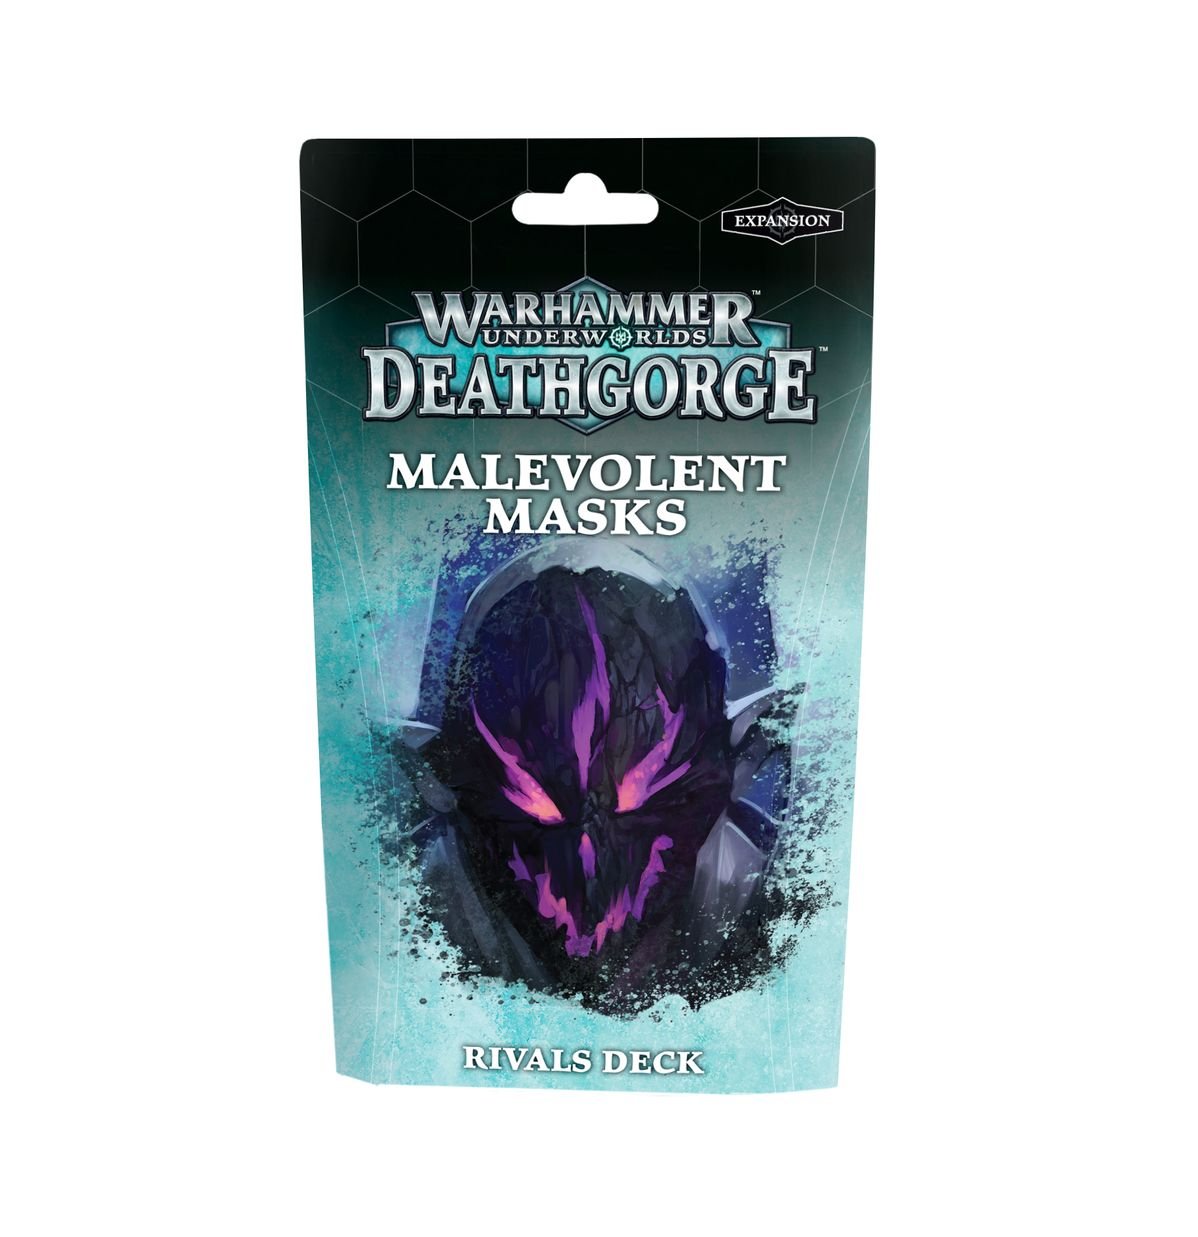 Warhammer Underworlds Deathgorge: Malevolent Masks Rivals Deck - Gamescape